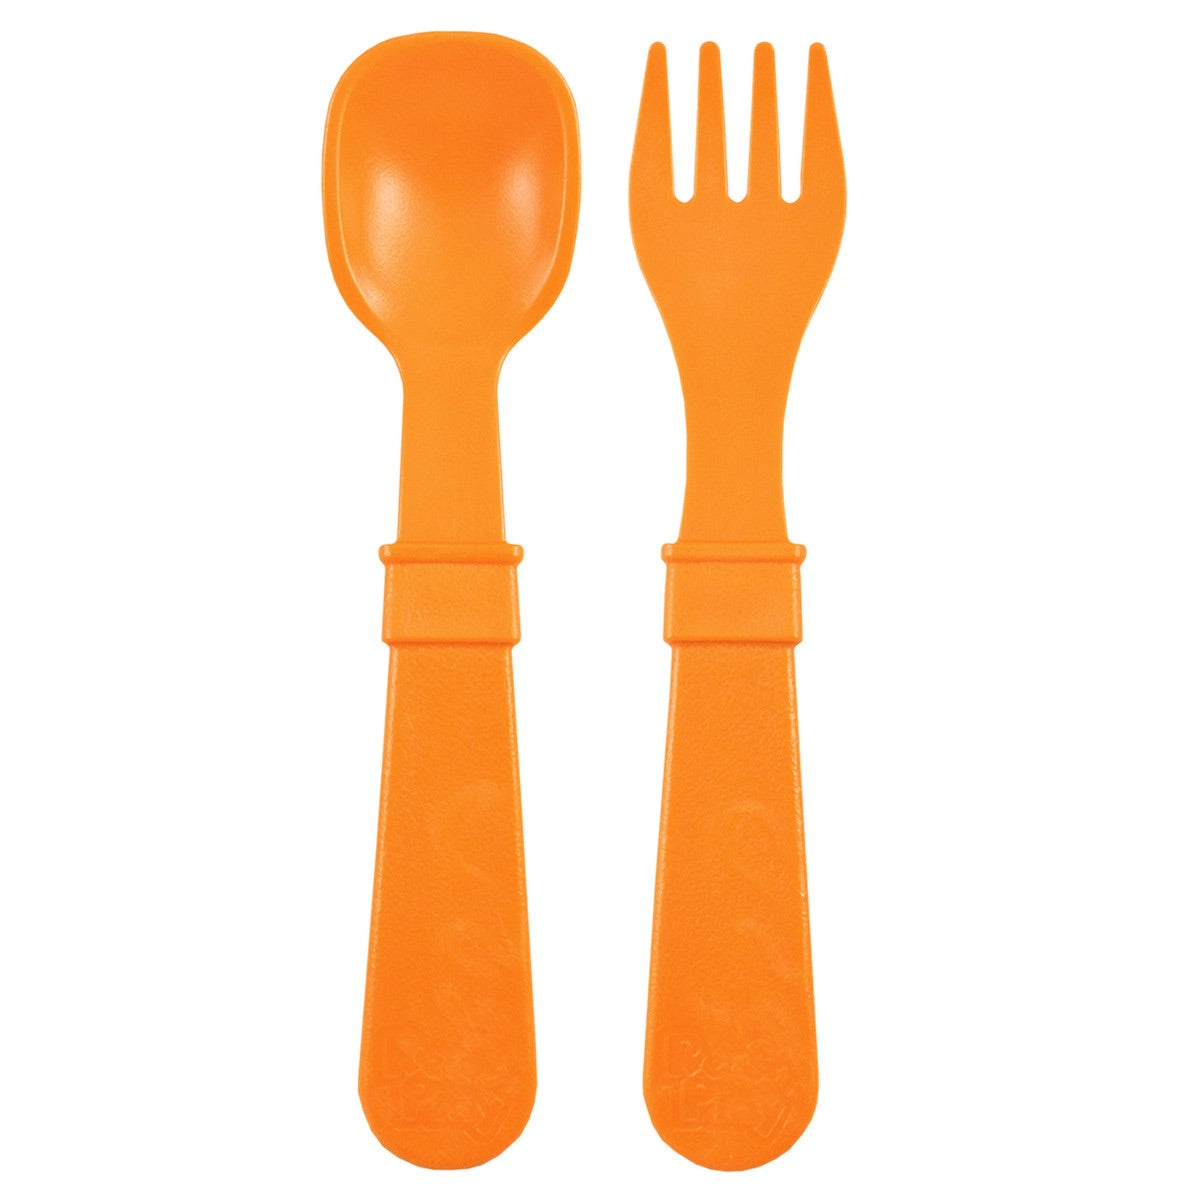 Re-Play Fork & Spoon - Little Oak + Co